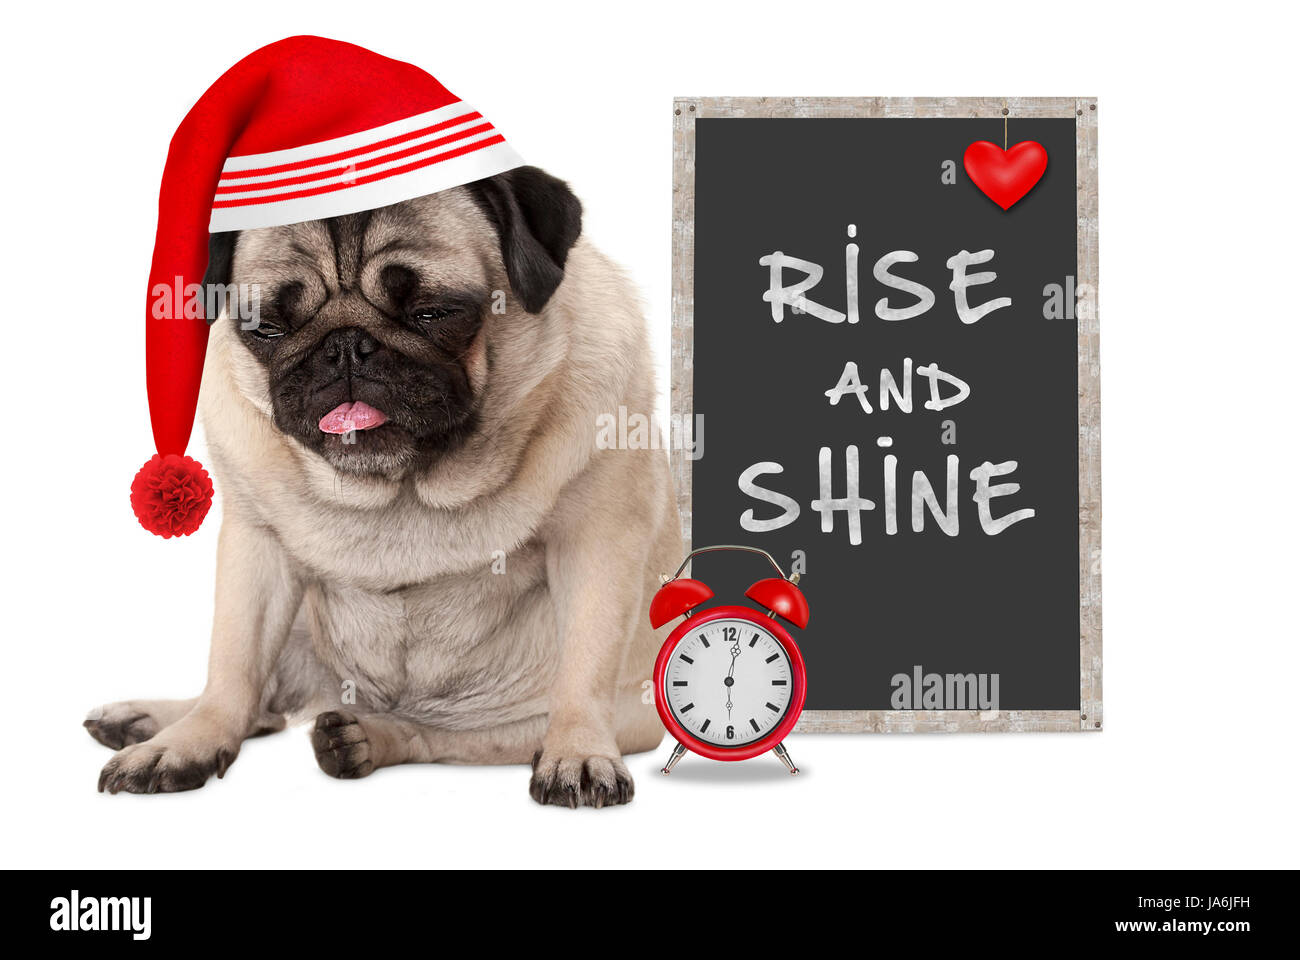 Alzarmi in mattina presto, grumpy pug cucciolo di cane rosso con cappuccio di pelo, sveglia e firmare con testo di origine e lucentezza, isolato su sfondo bianco Foto Stock